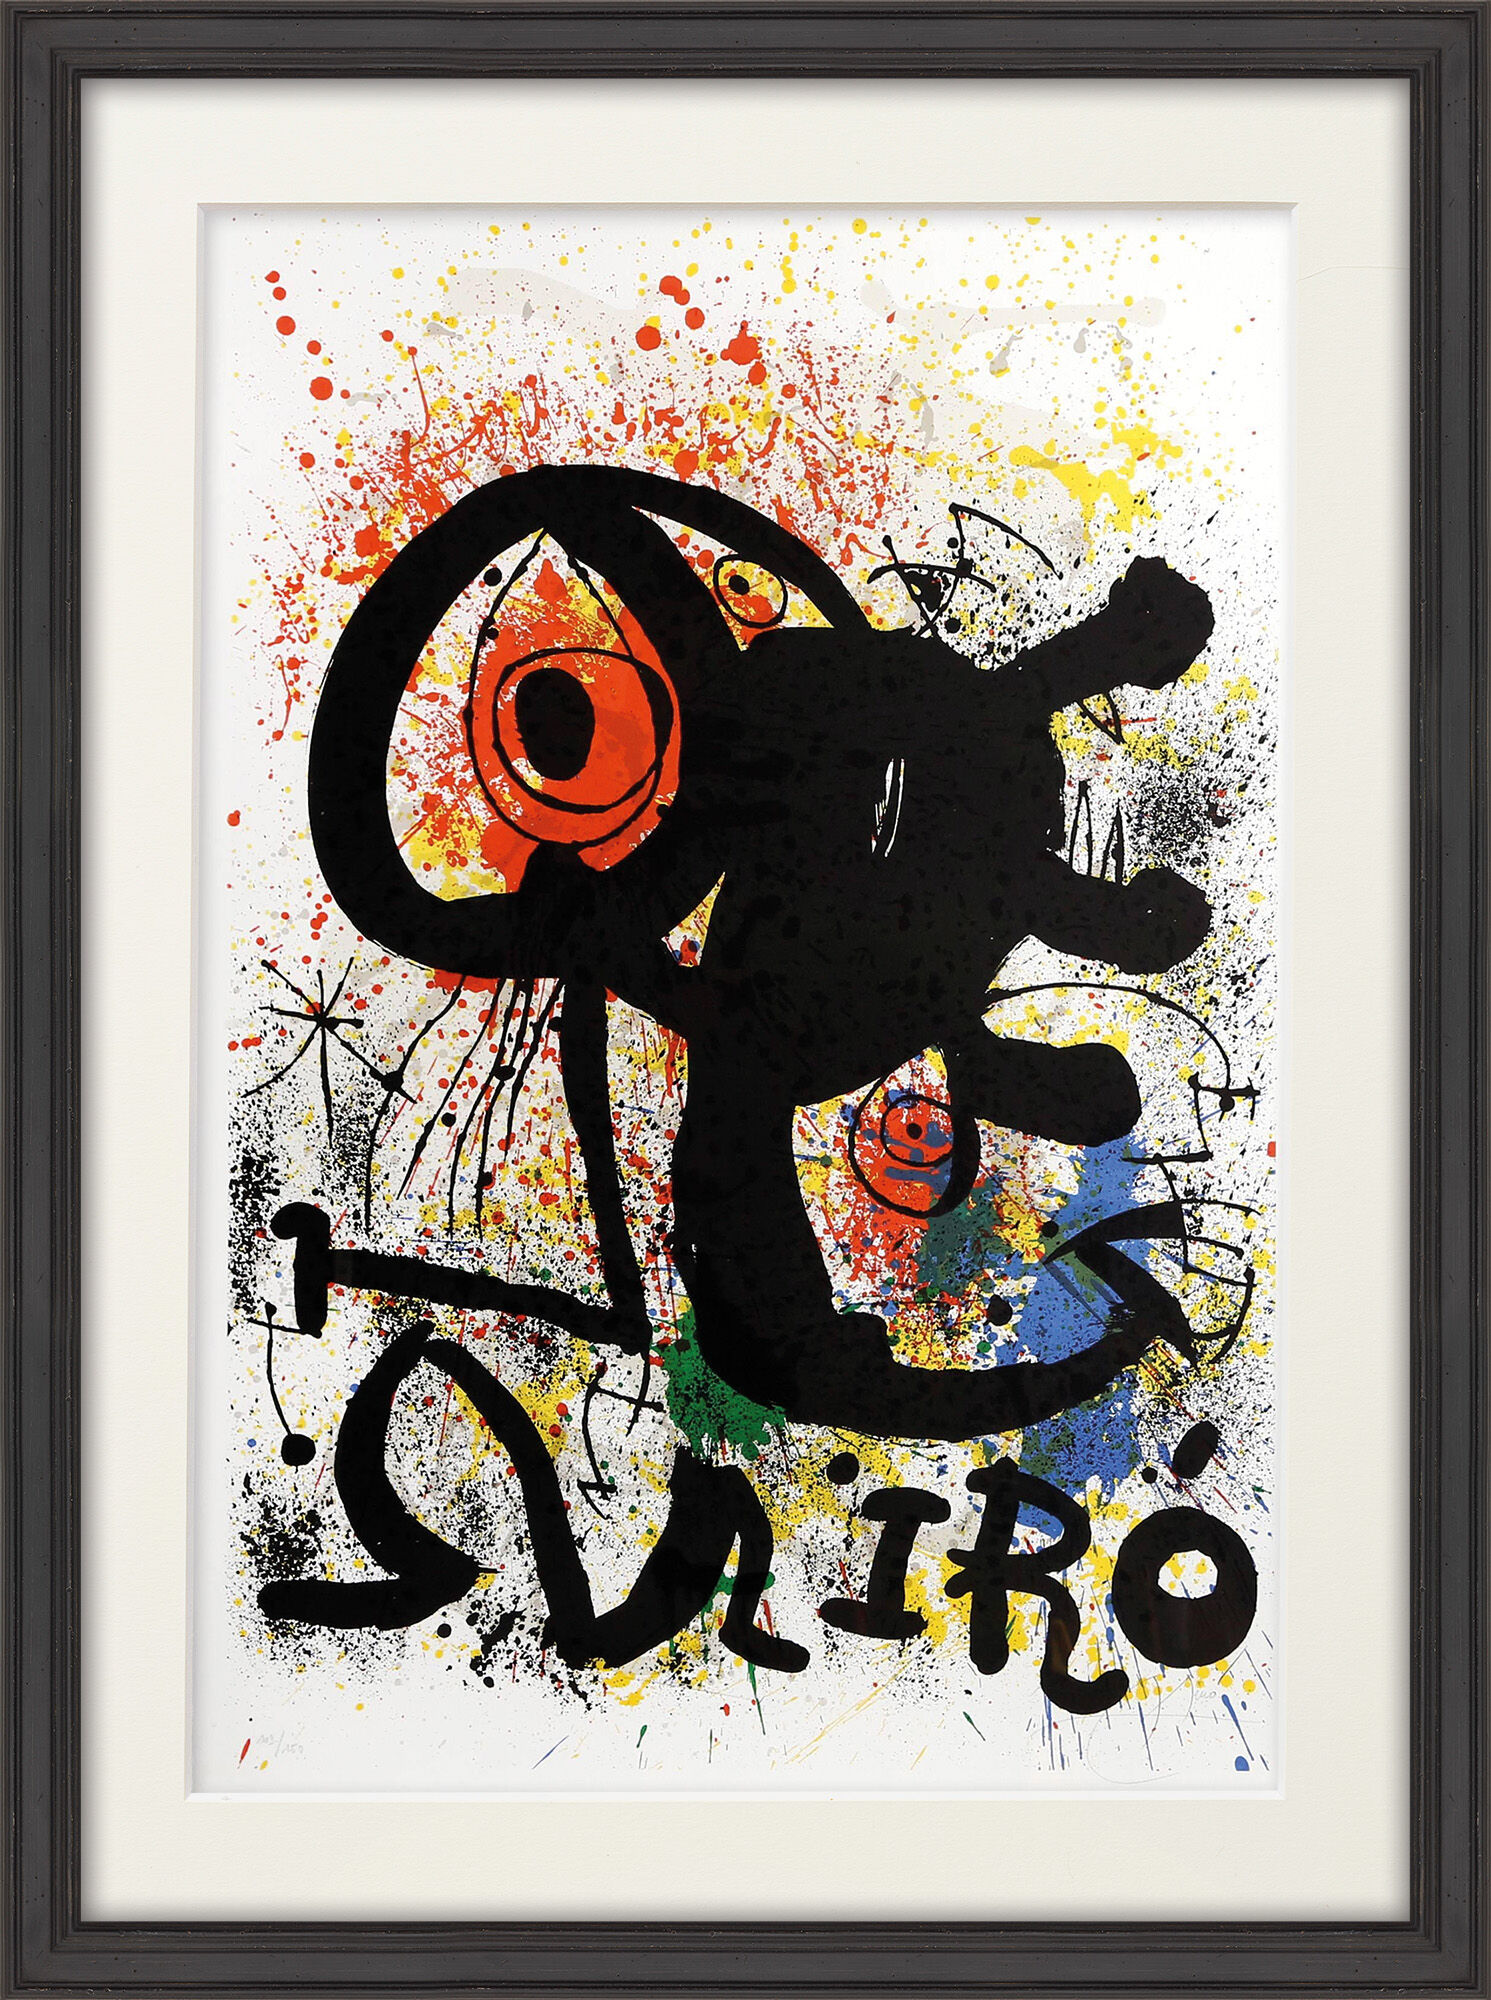 Picture "Sculptures et Céramiques" (1973) by Joan Miró